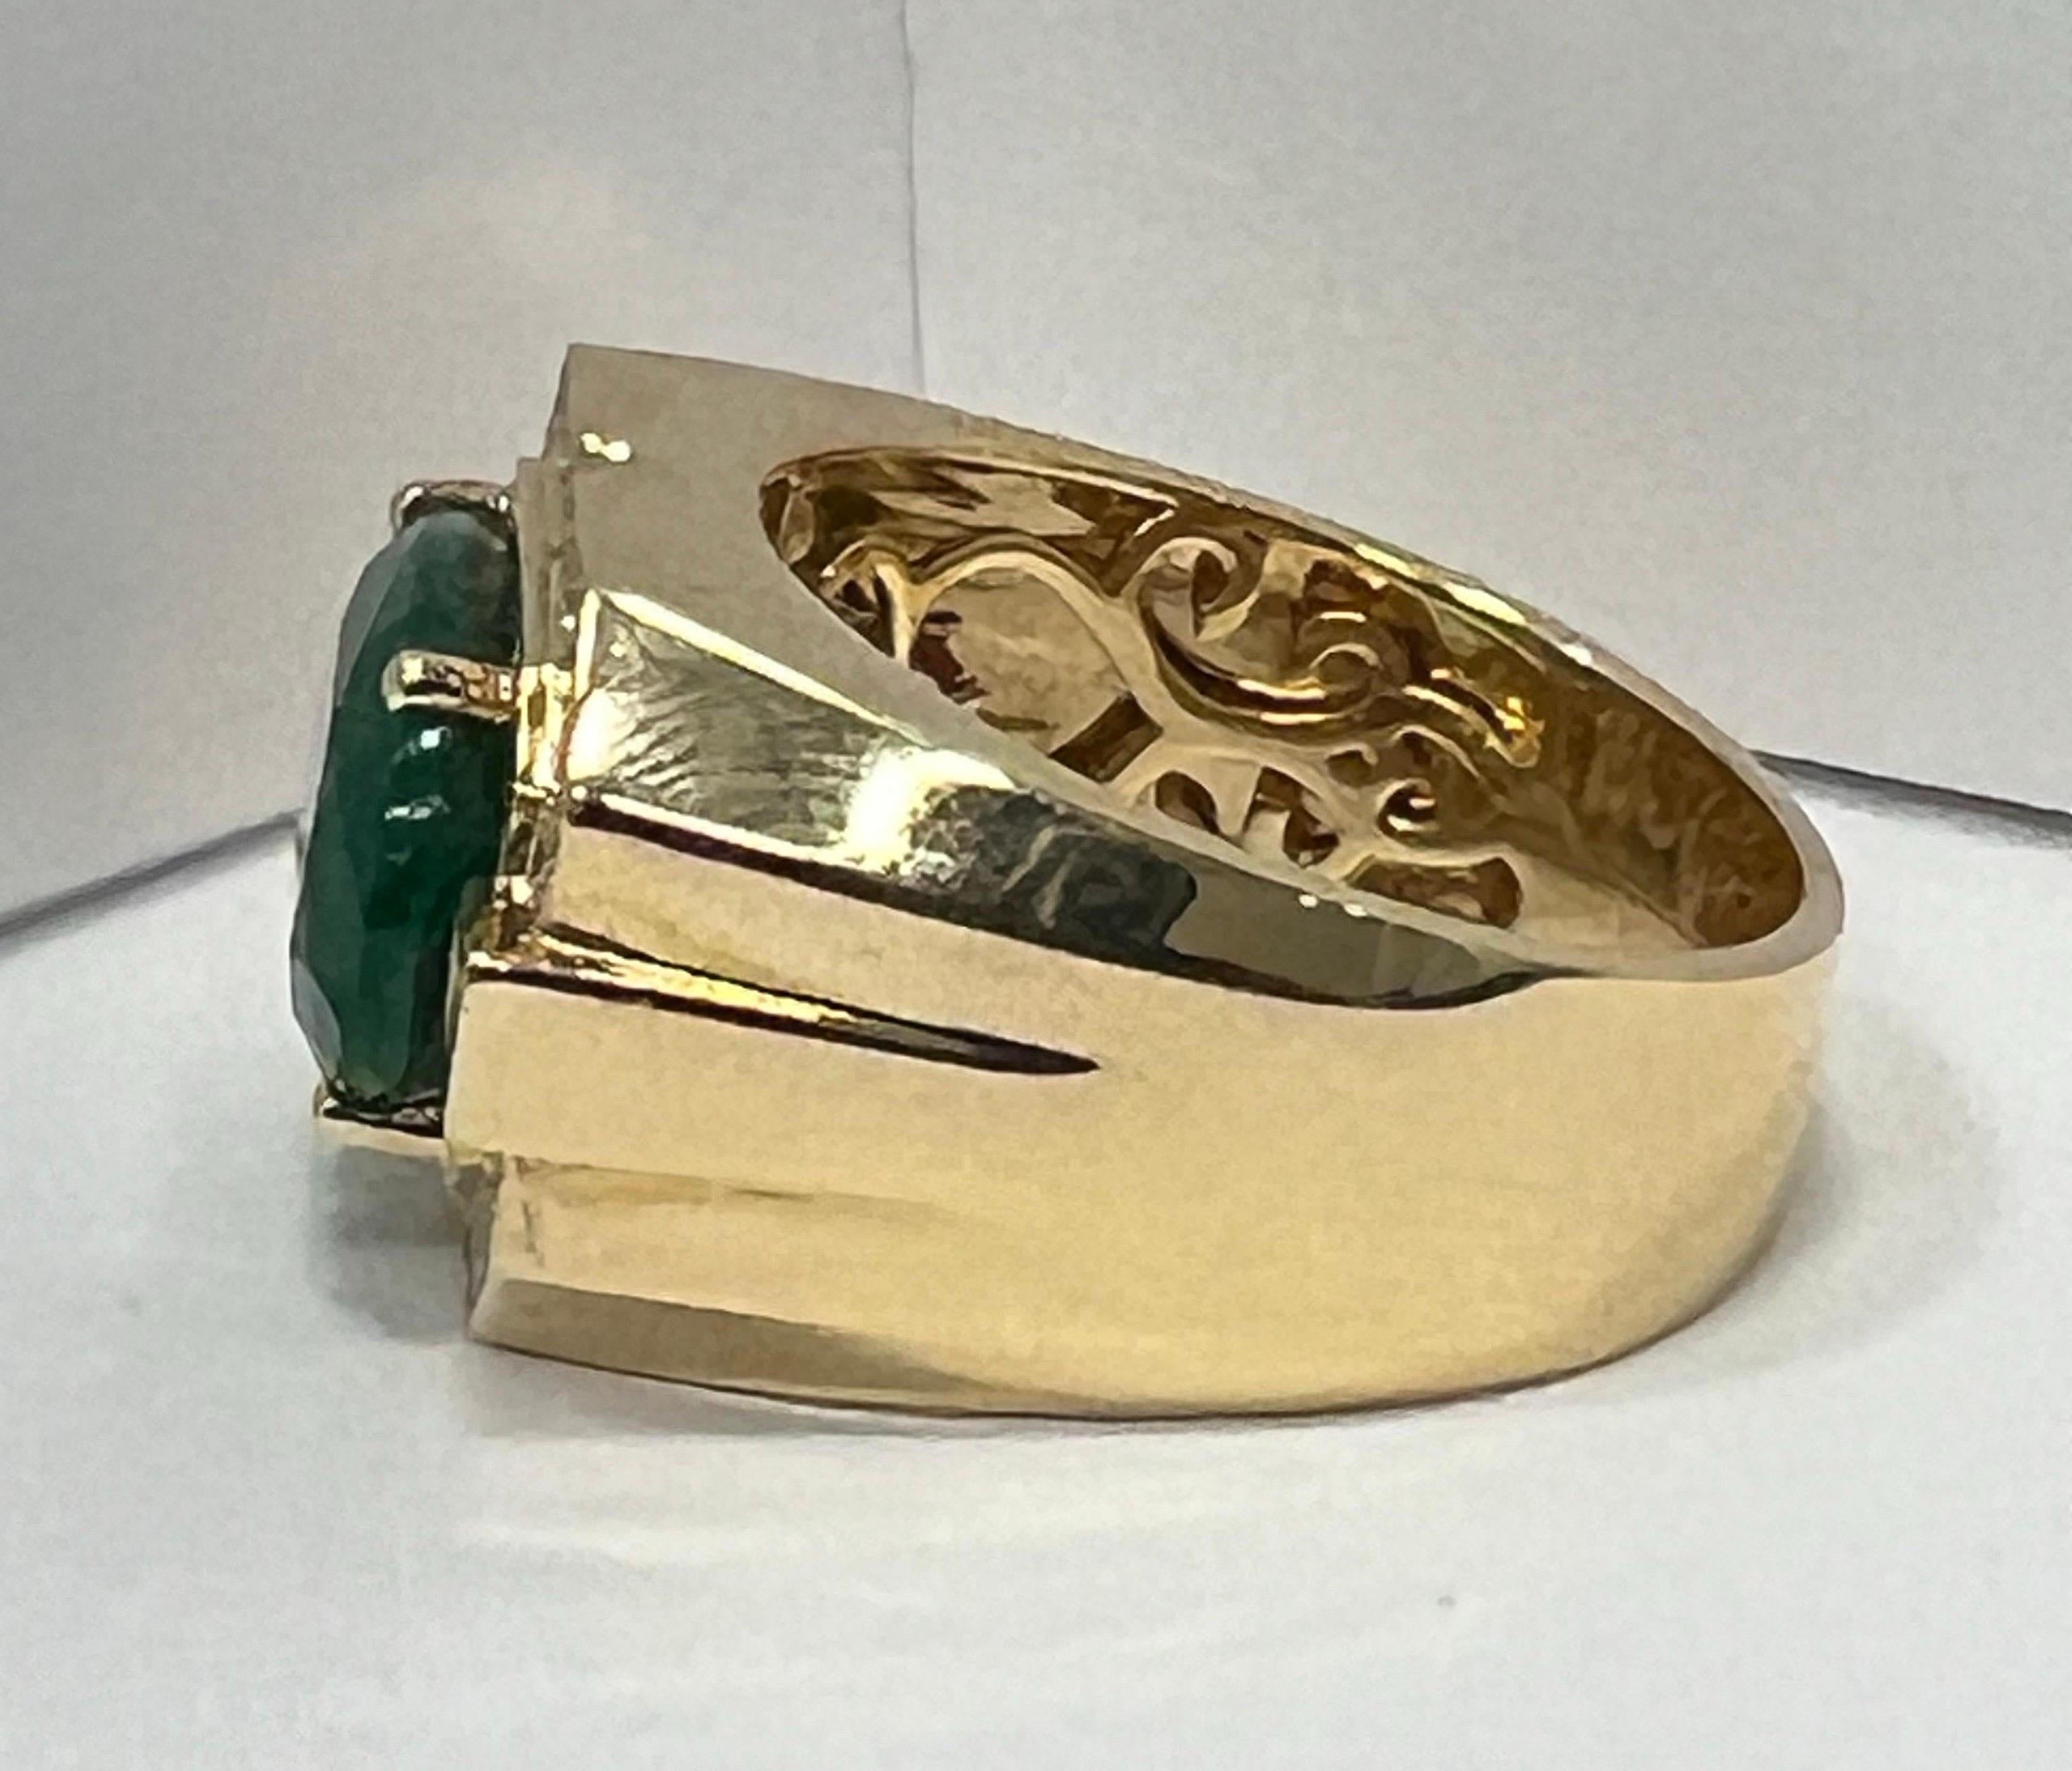 Der Ring ist Herrenring in 18k Gelbgold mit Akzenten von weißen Diamanten 0,38 Karat gesetzt. Diamanten sind vielgestaltig. Der Ring hat derzeit die Größe 11, kann aber problemlos plus minus 2 Größen nach unten oder oben angepasst werden. Smaragd